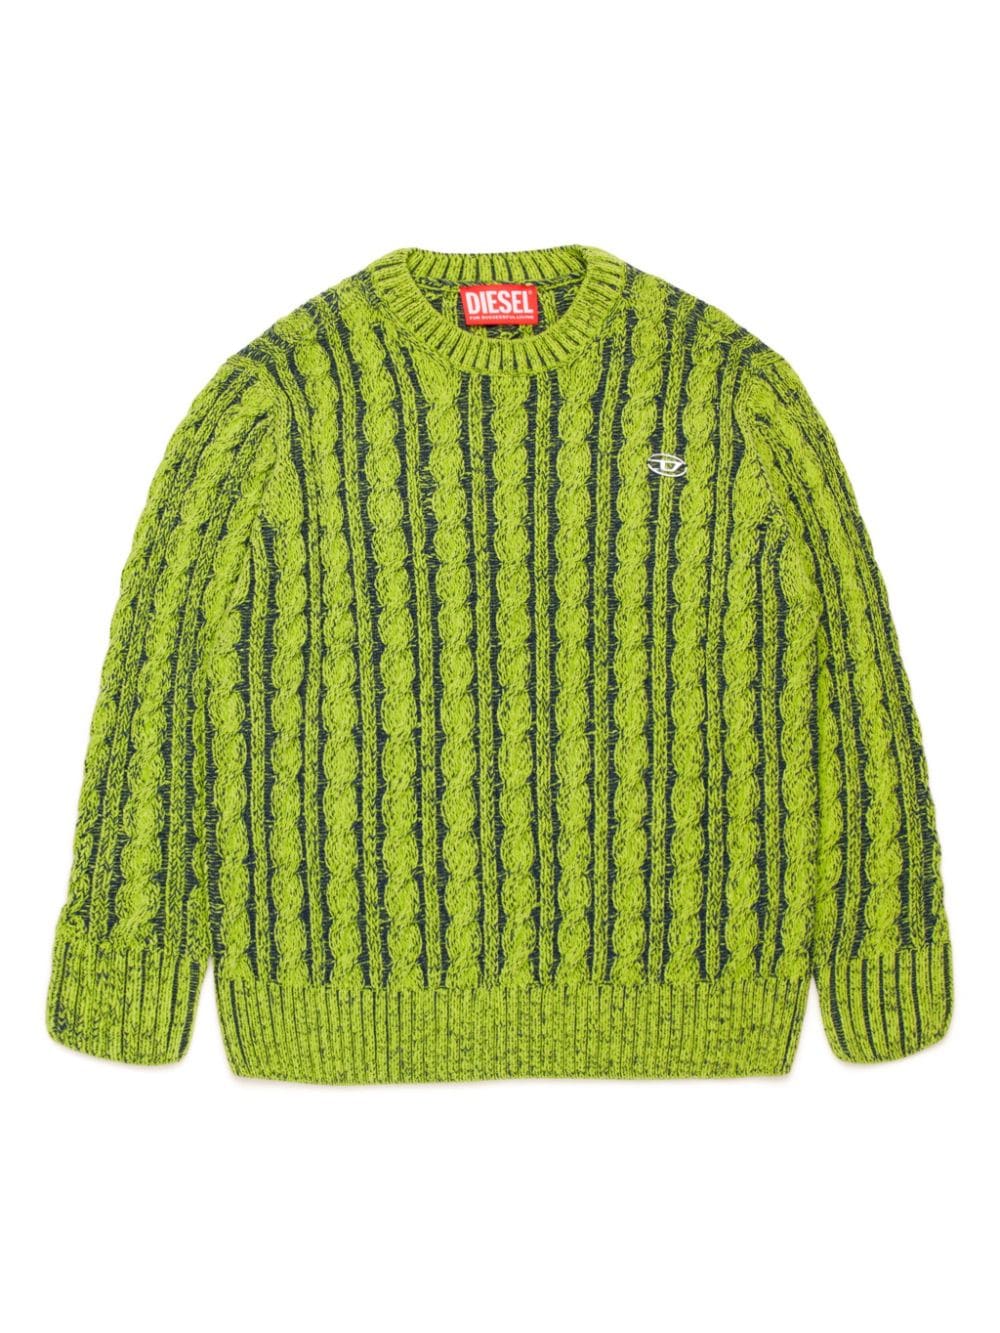 Diesel Kids cable-knit crew-neck jumper - Green von Diesel Kids